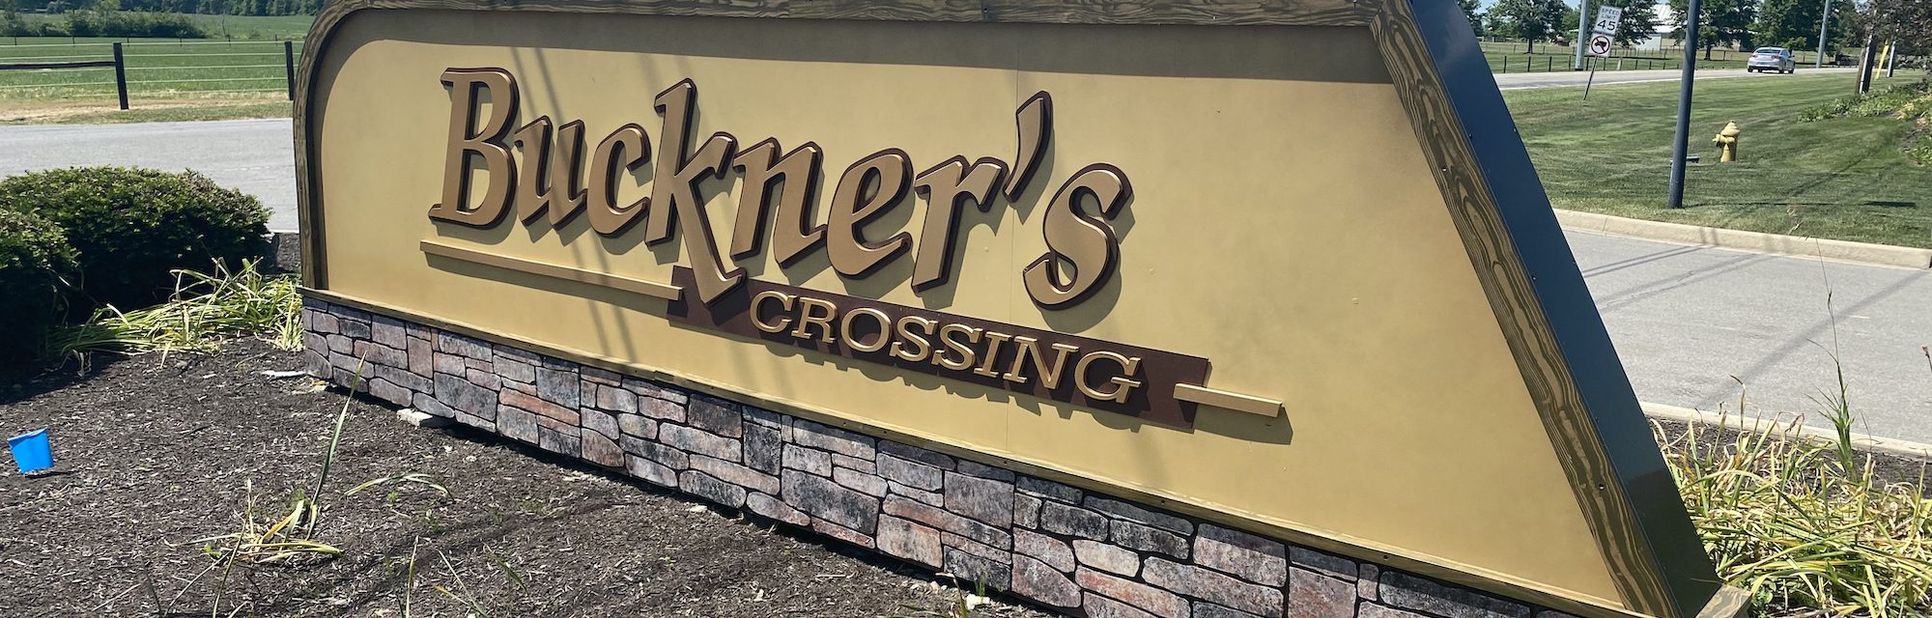 Buckner's Crossing,46818